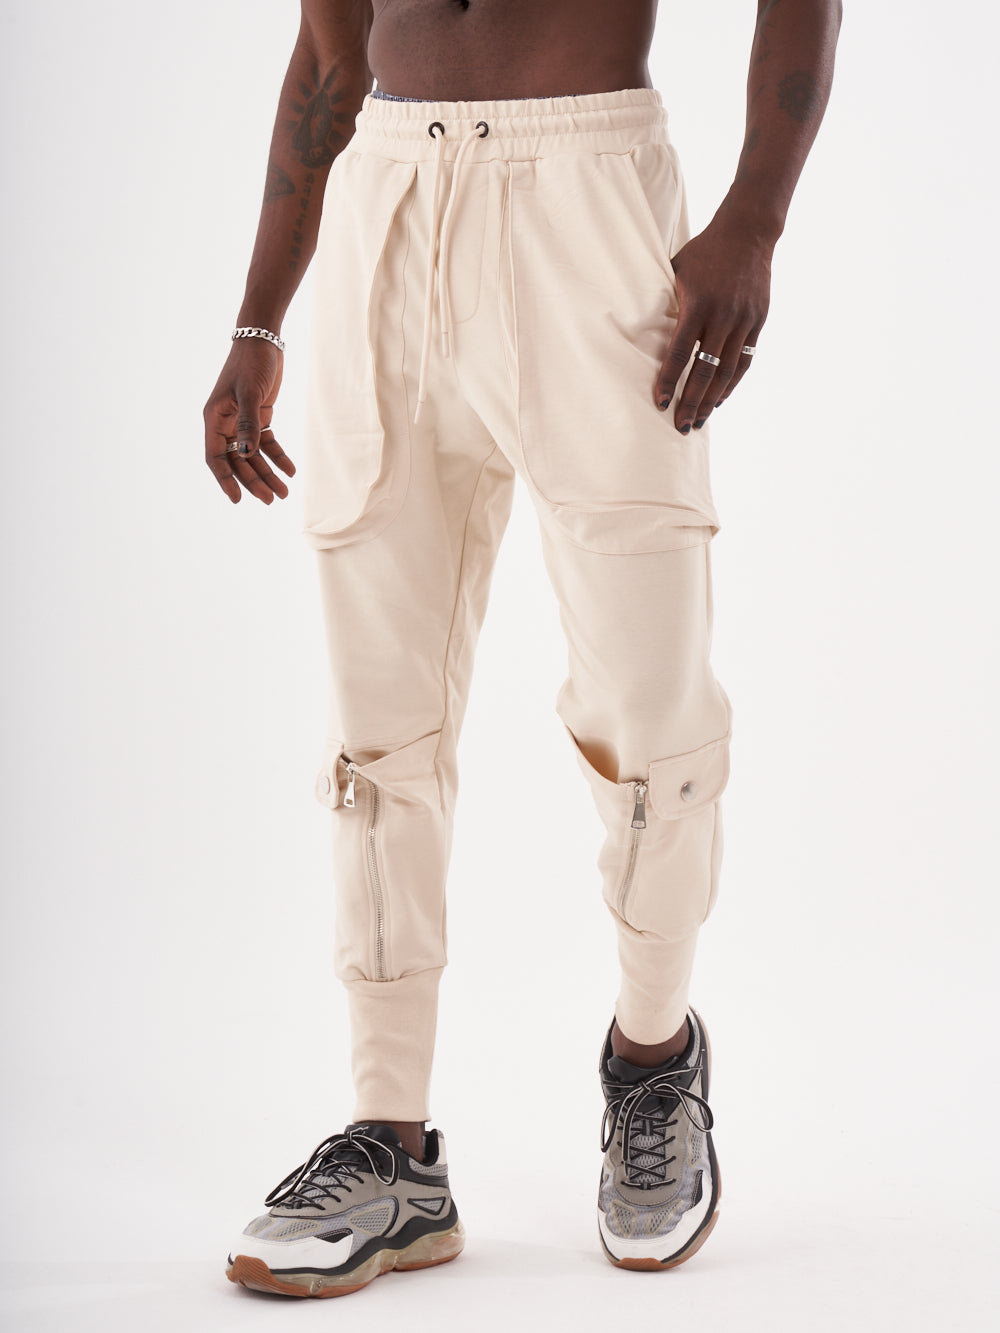 Streetwear Style Sweatpants & Joggers for Men - SERNES